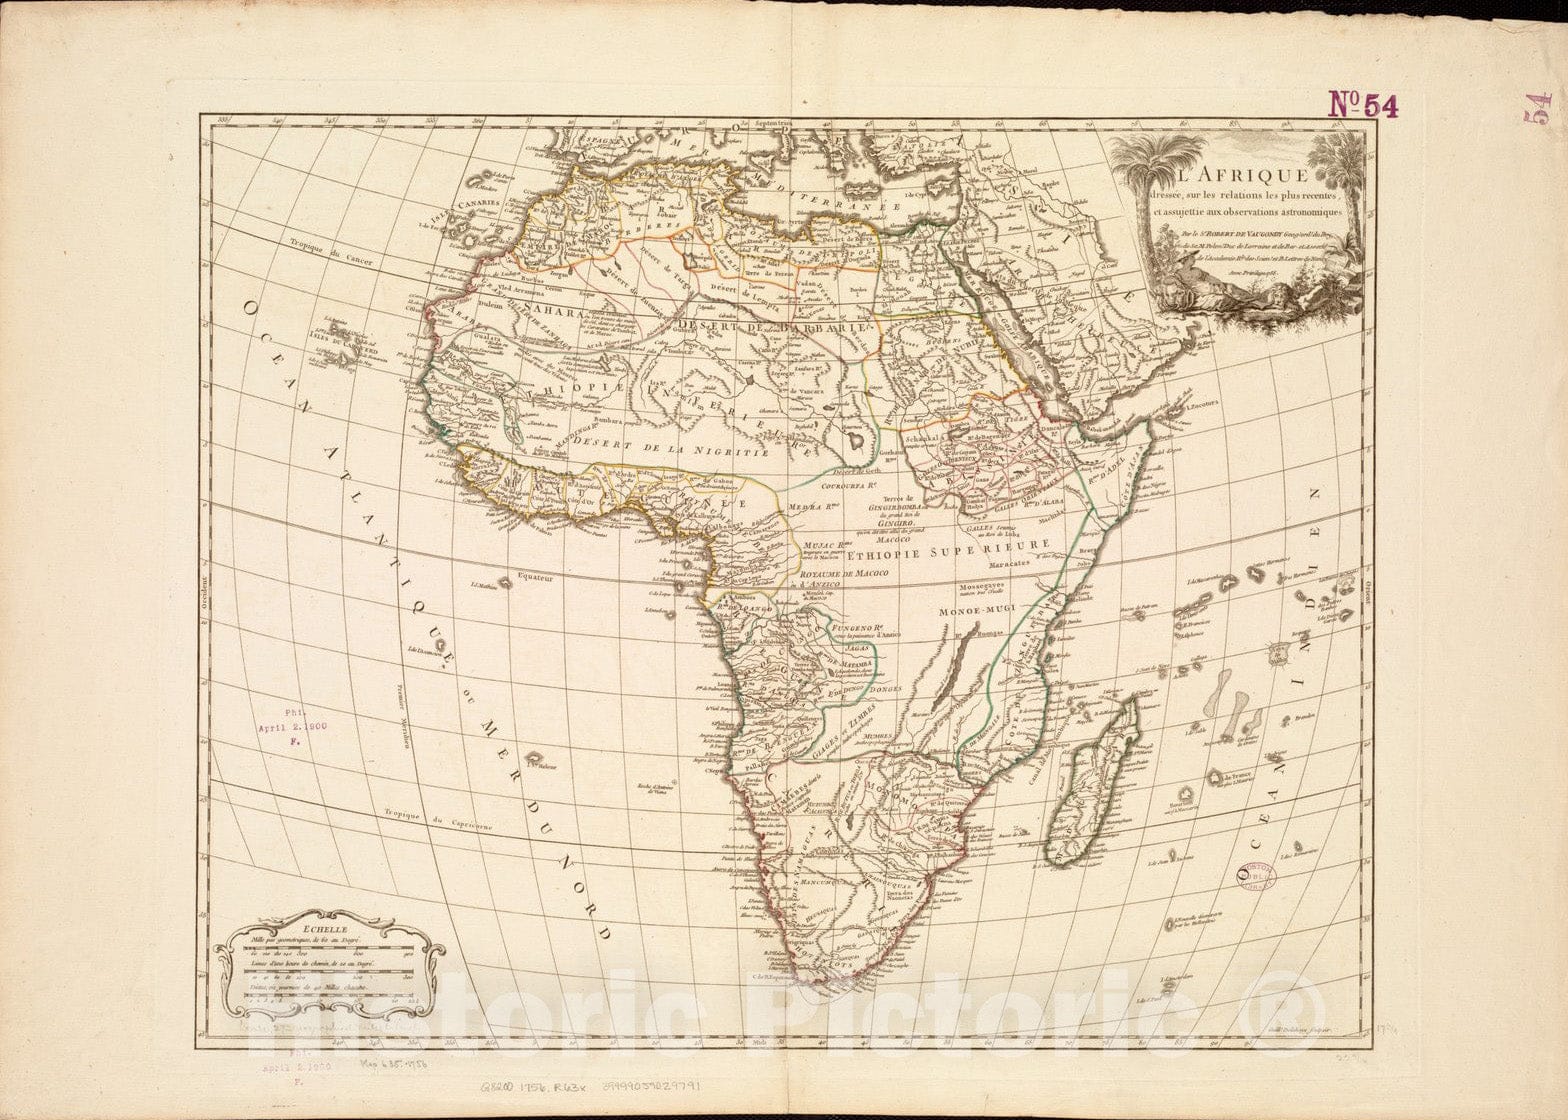 Historical Map, 1757 L'Afrique : dressee, sur les Relations les Plus recentes, et assujettie aux observations astronomiques, Vintage Wall Art